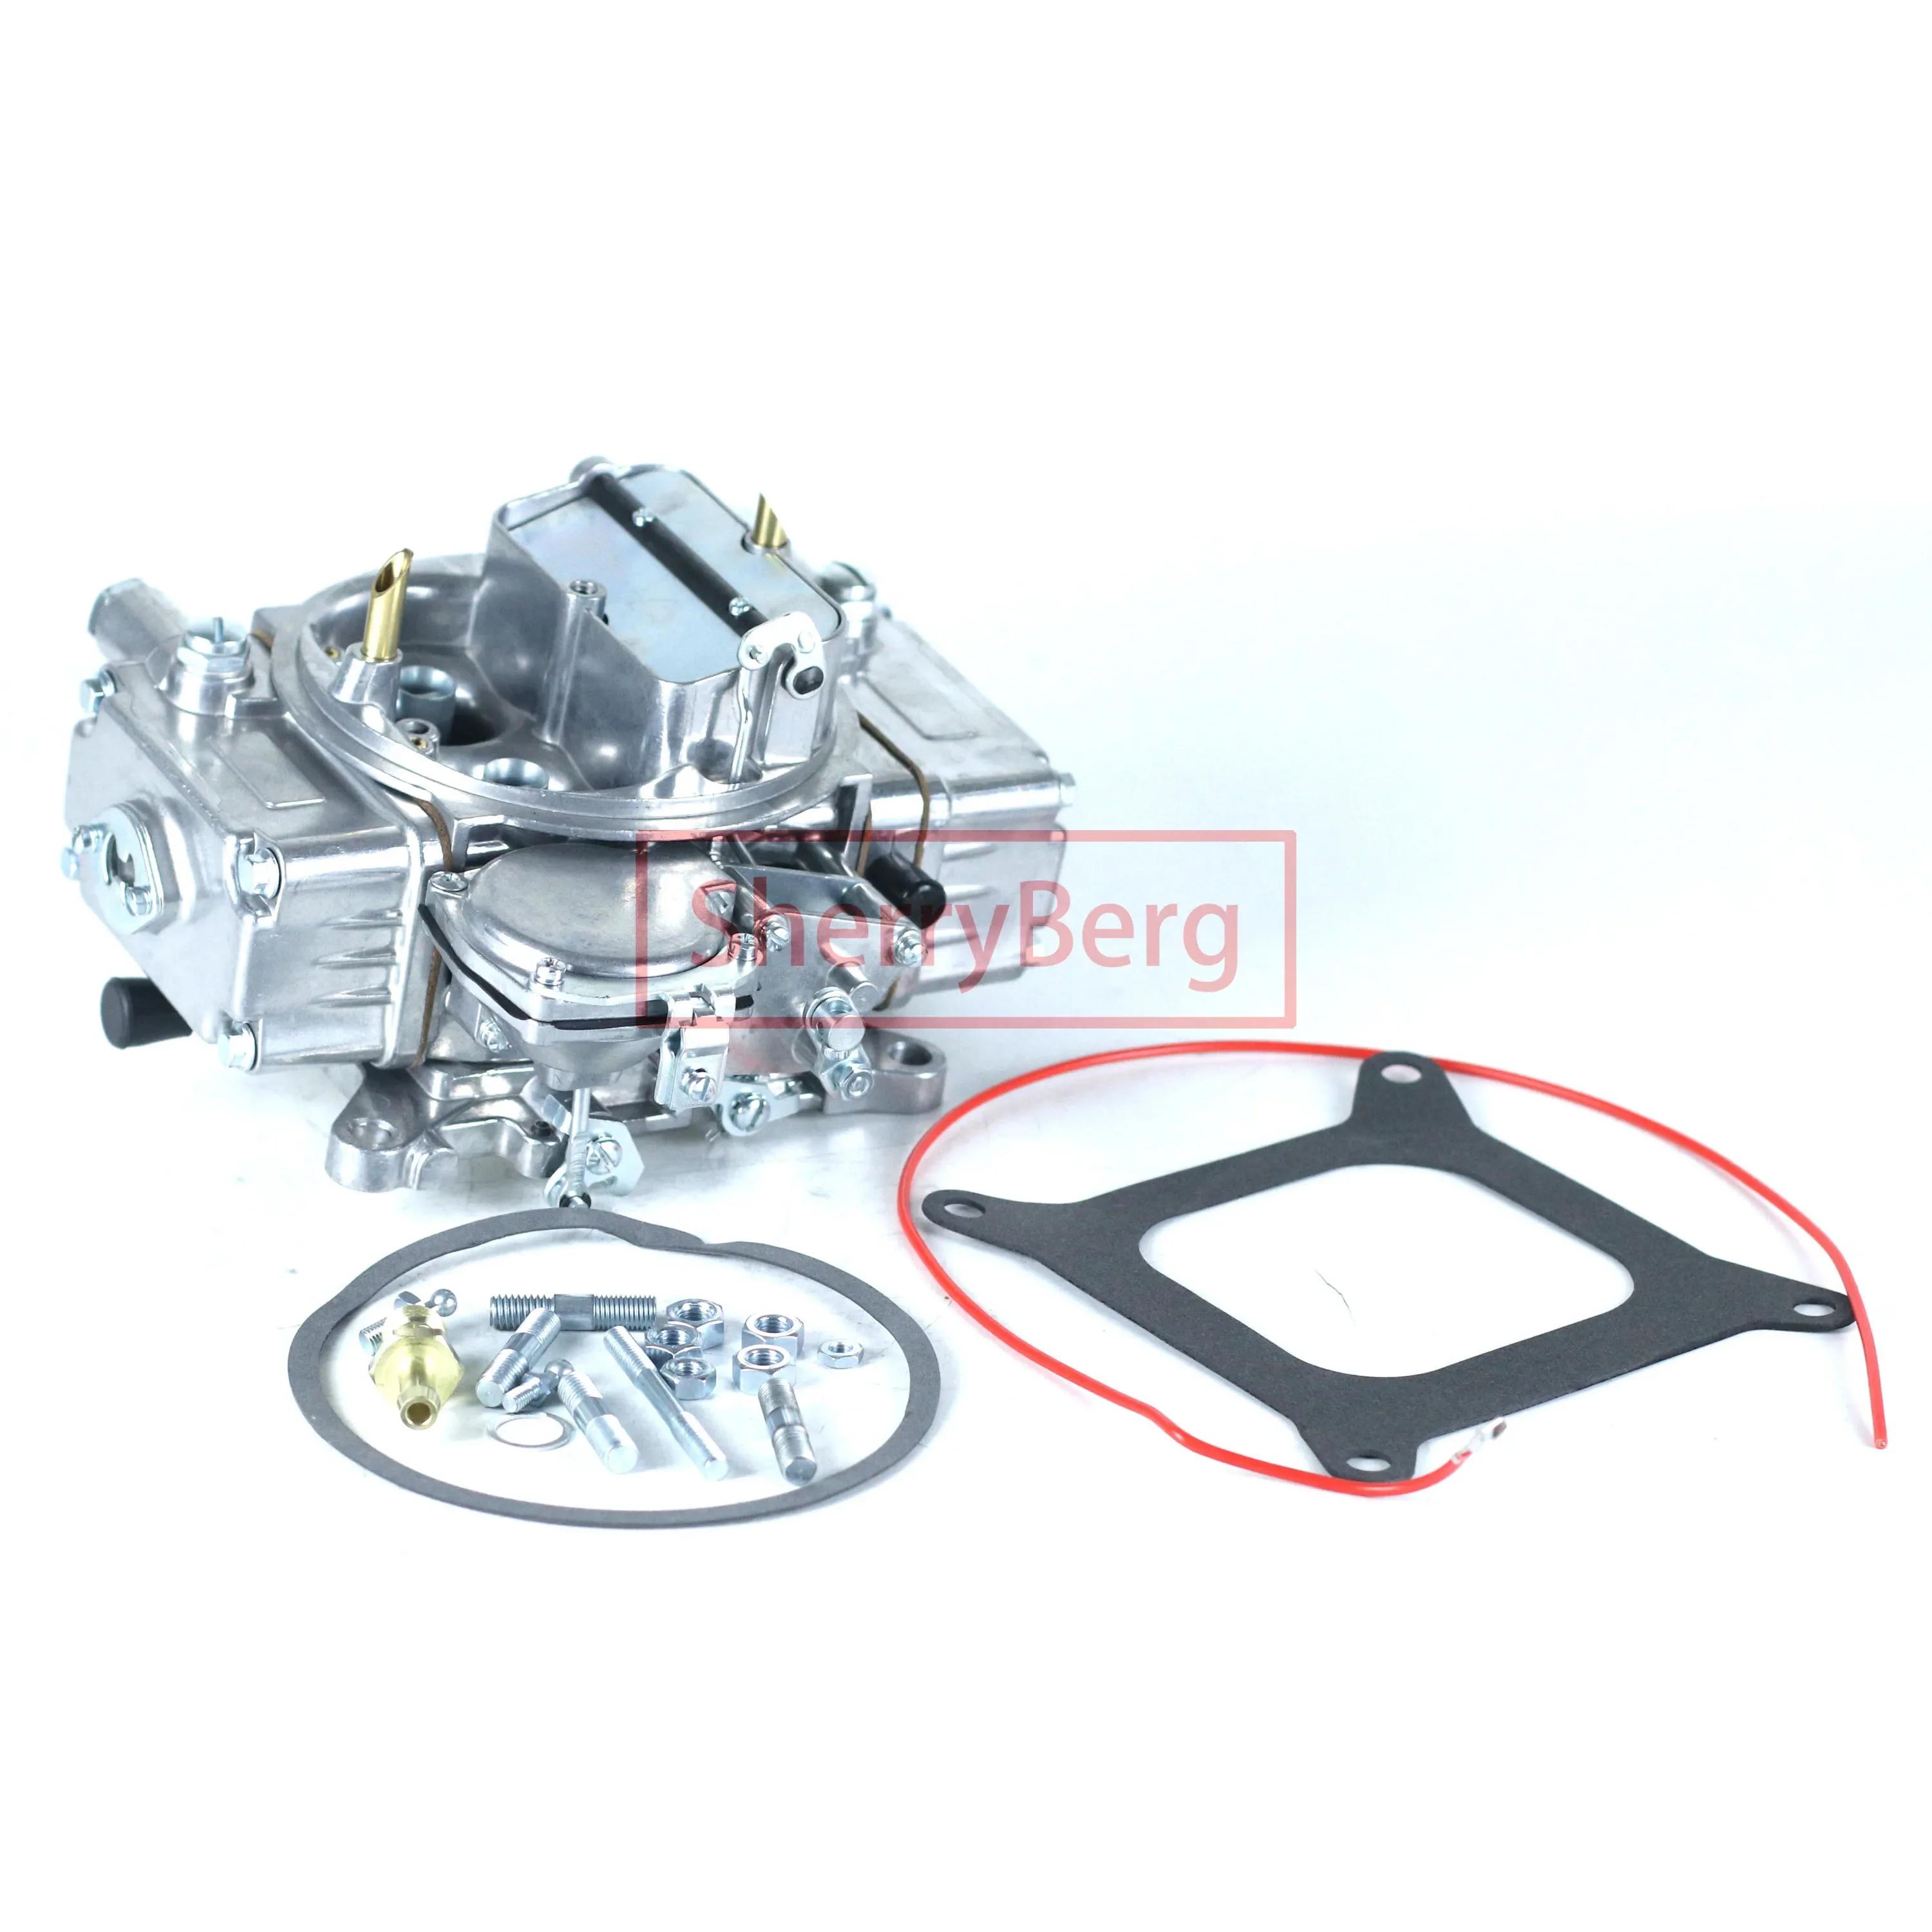 SherryBerg Universal Carburador Carb 4 BBL Ŭ ī극Ÿ 0-1850S 4160  ũ 600 CFM Rep, Holley 600CFM